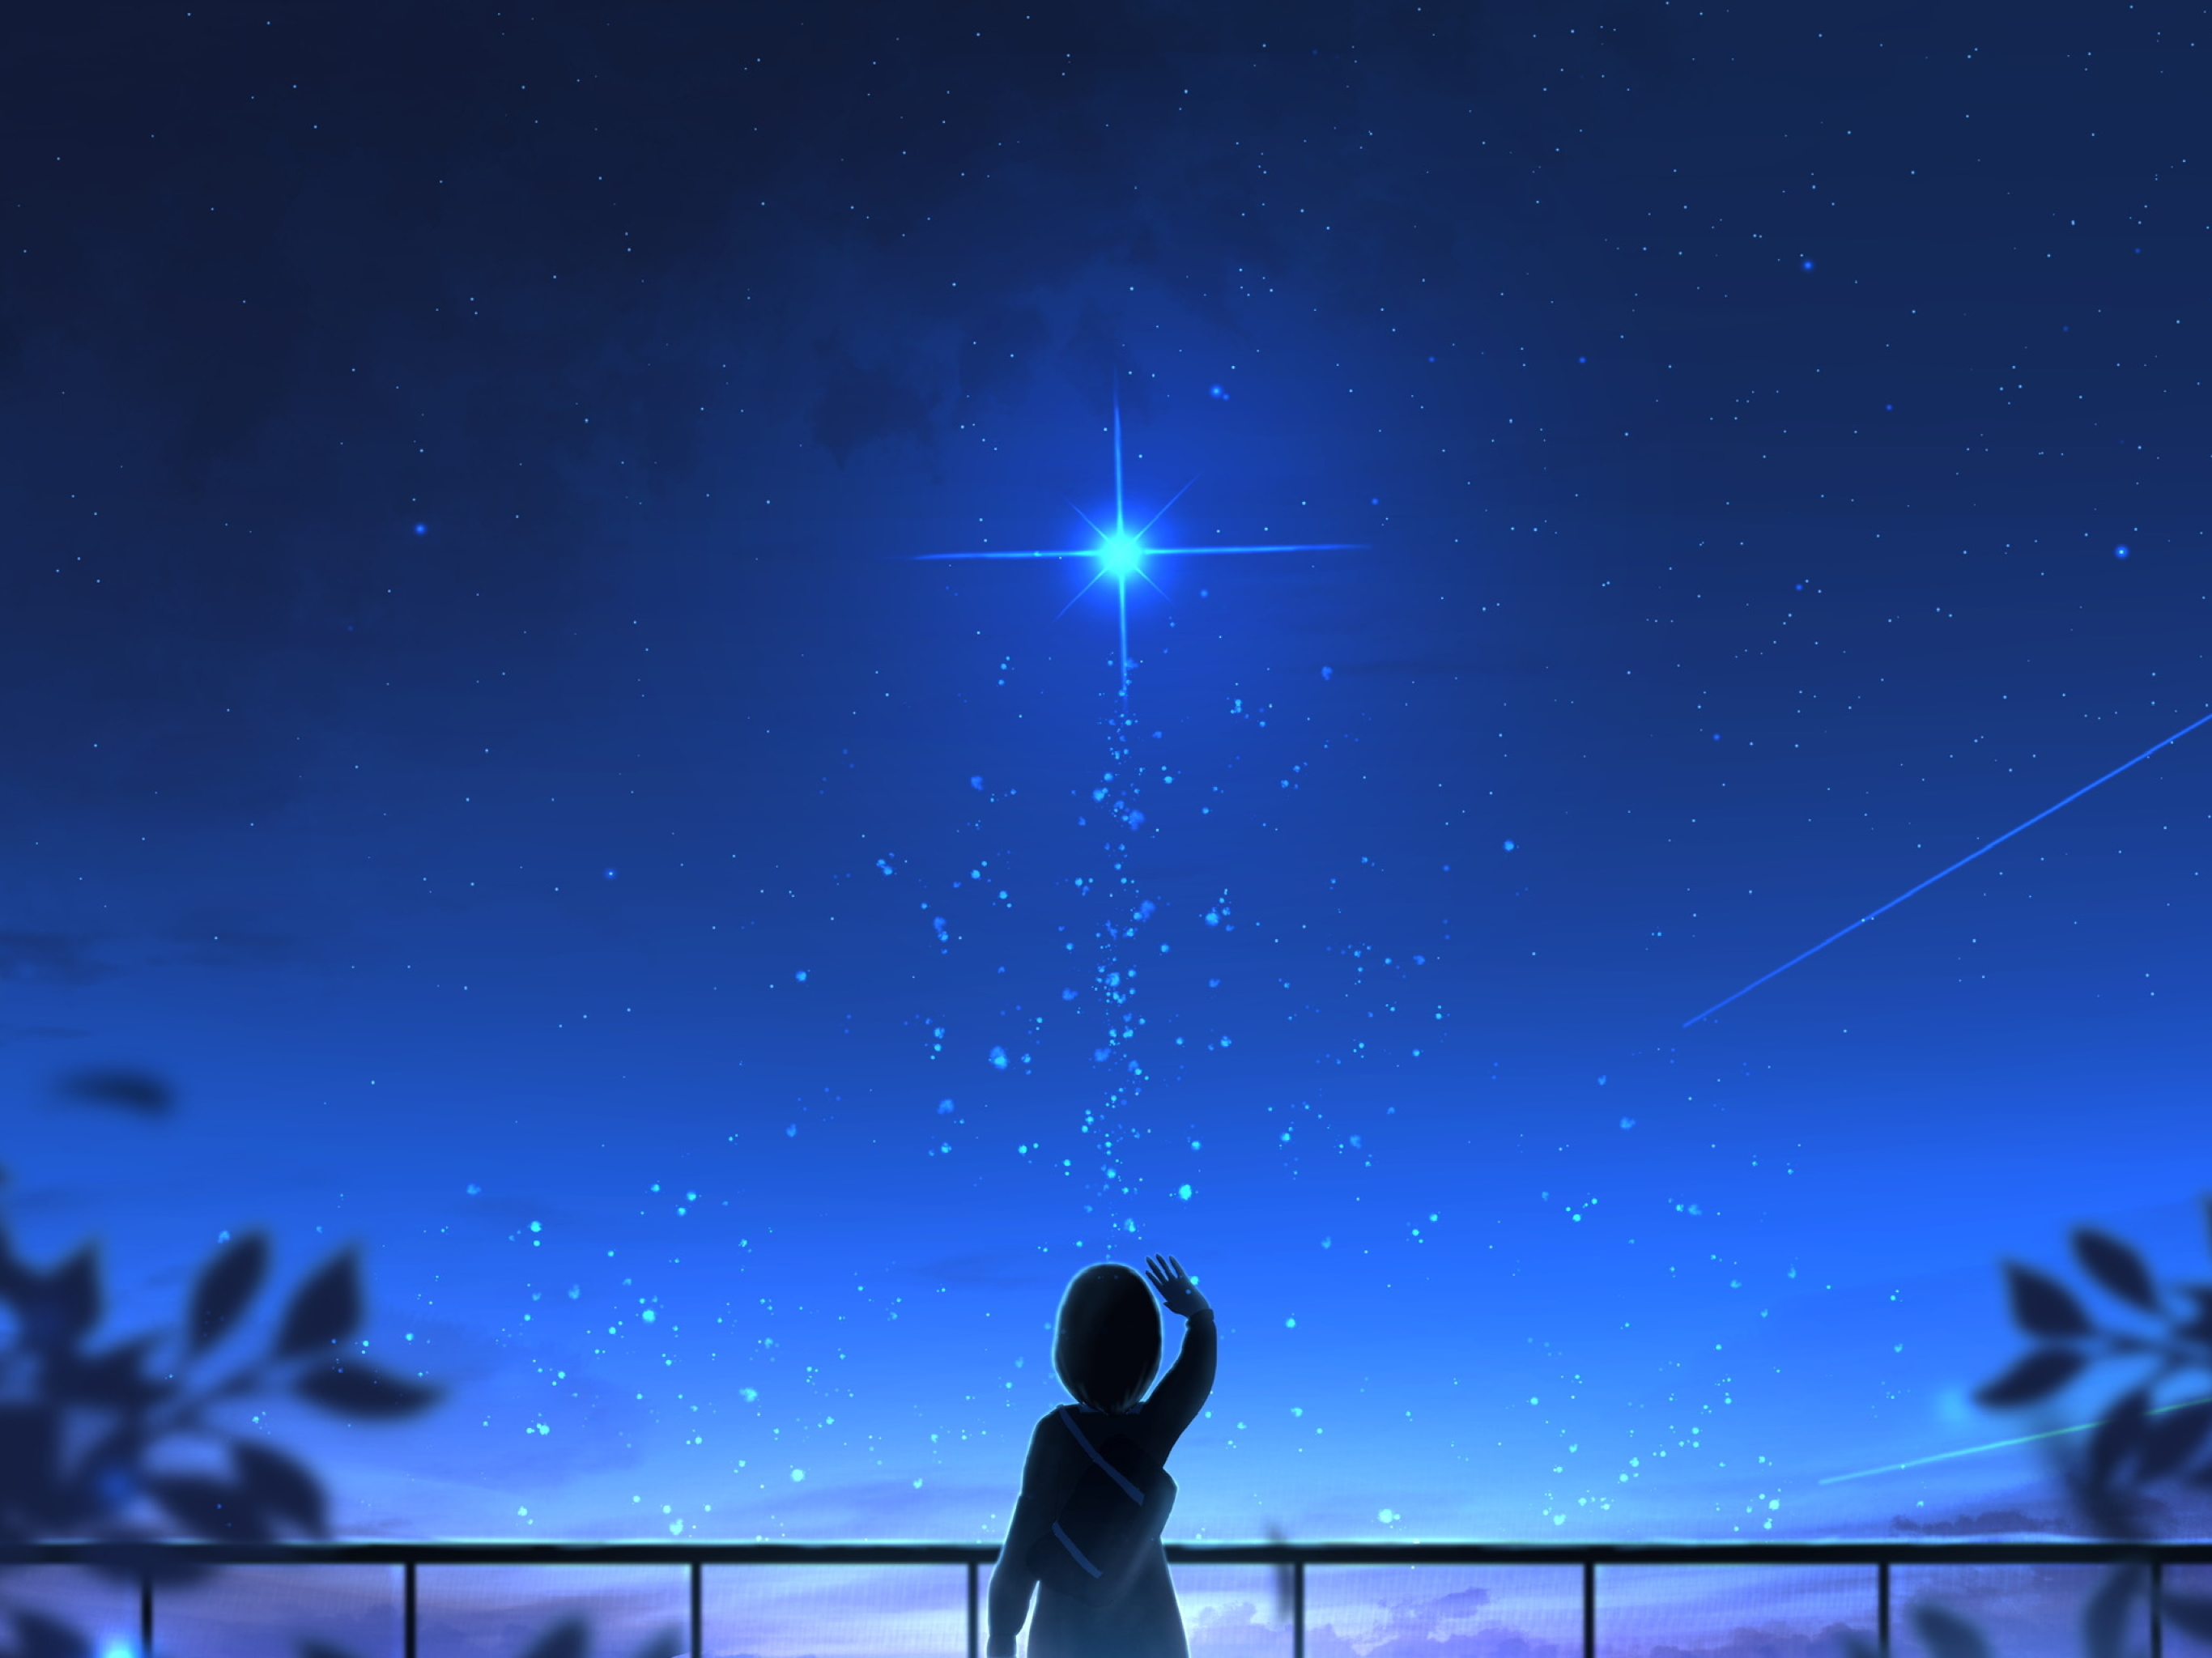 Яркая звезда путь трудный освещает. Девушка на фоне звездного неба. Человек на фоне звездного неба.